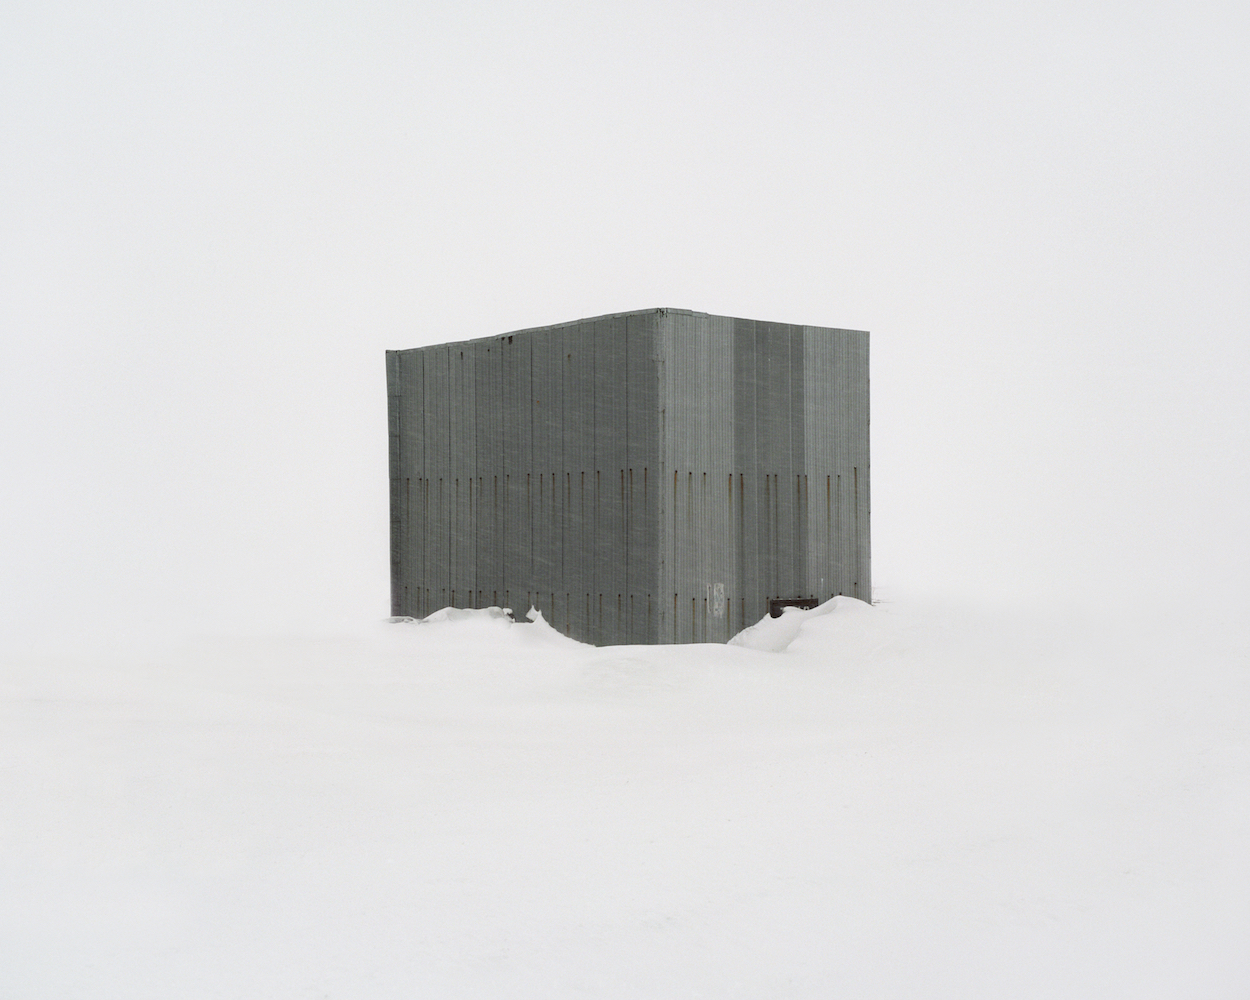 #23 из серии «‎Закрытые территории»‎. Саркофаг над закрытой шахтой глубиной 4 километра. Россия, Мурманская область